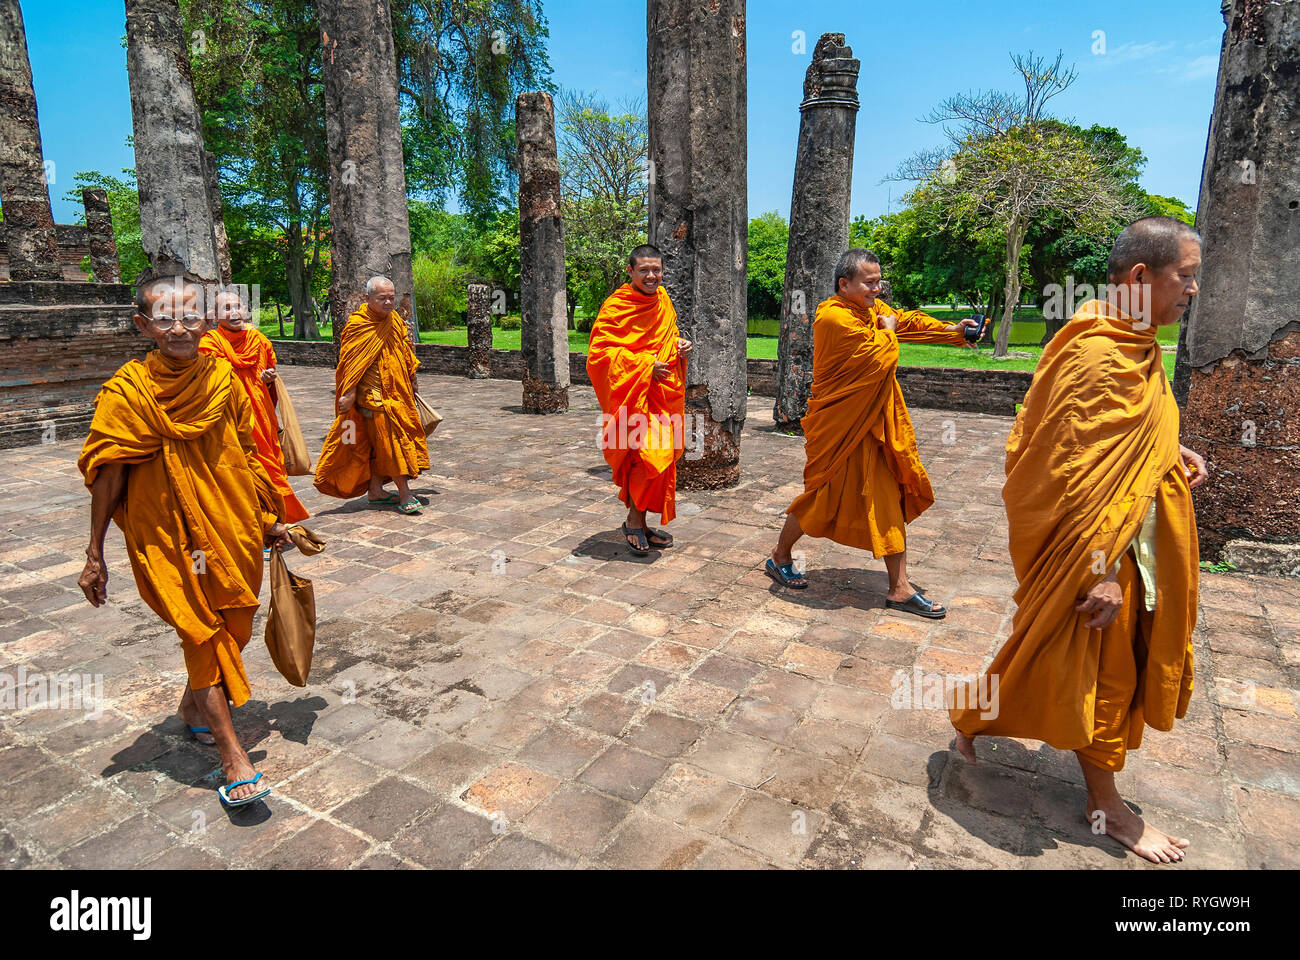 Un groupe de moines bouddhistes balade et souriant lors d'une visite dans l'un des temples bouddhistes et les ruines de Sukhothai, Thaïlande, Asie. Banque D'Images